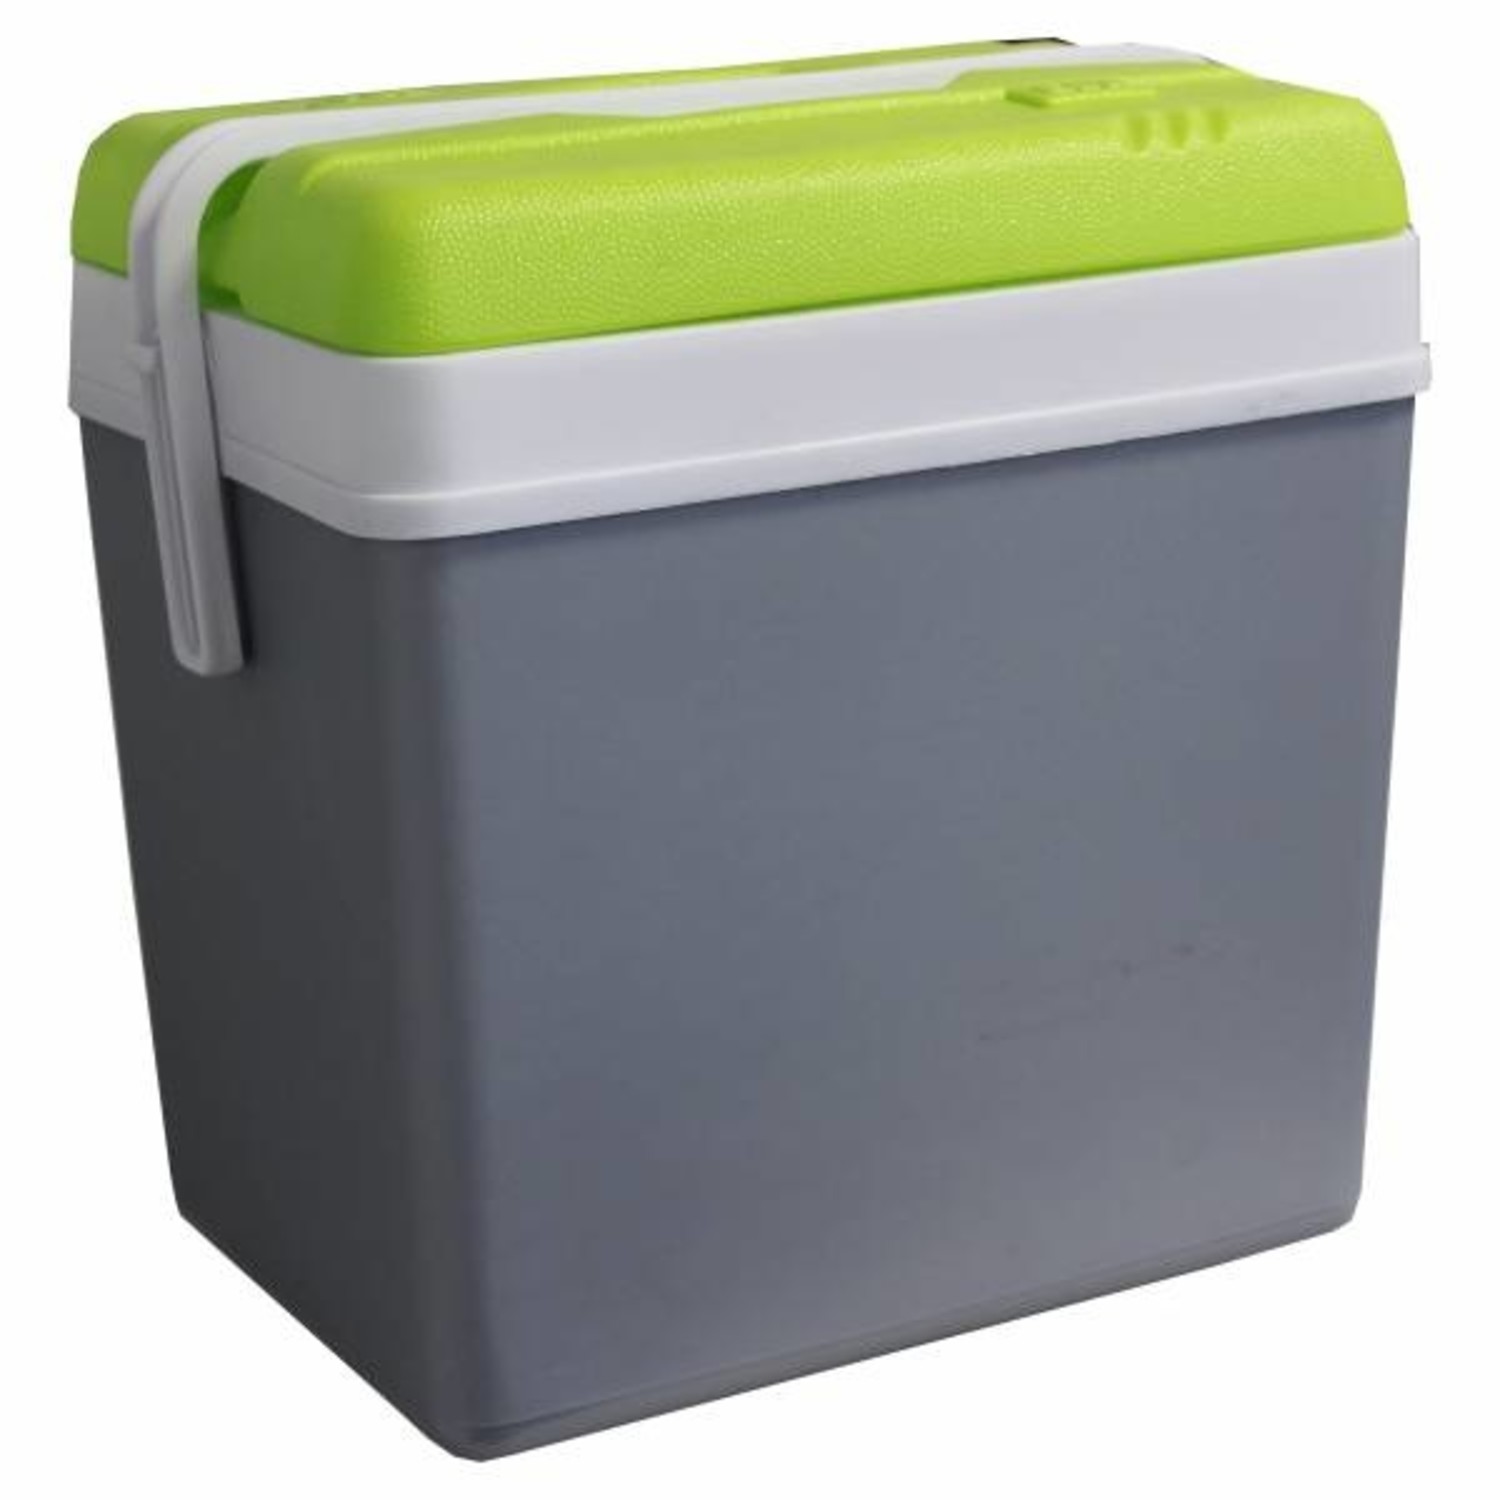 verbrand Nautisch verfrommeld koelbox 24 liter - Groen / Grijs - Voordeeldrogisterij